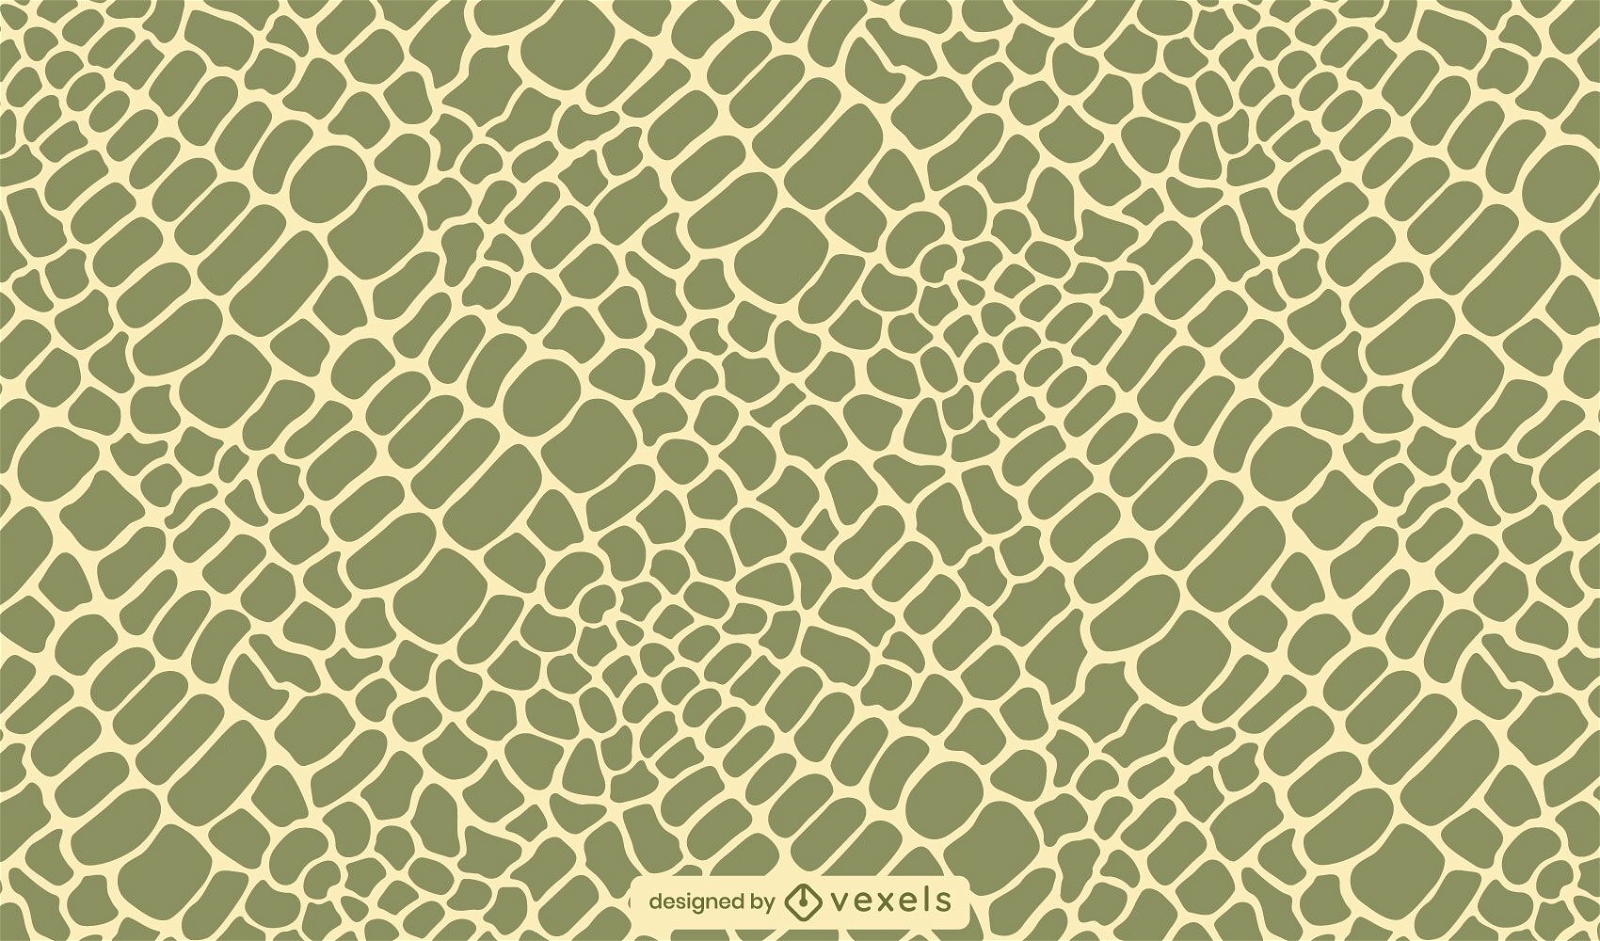 sekstant alder Twisted Crocodile Skin Pattern Design Vector Download